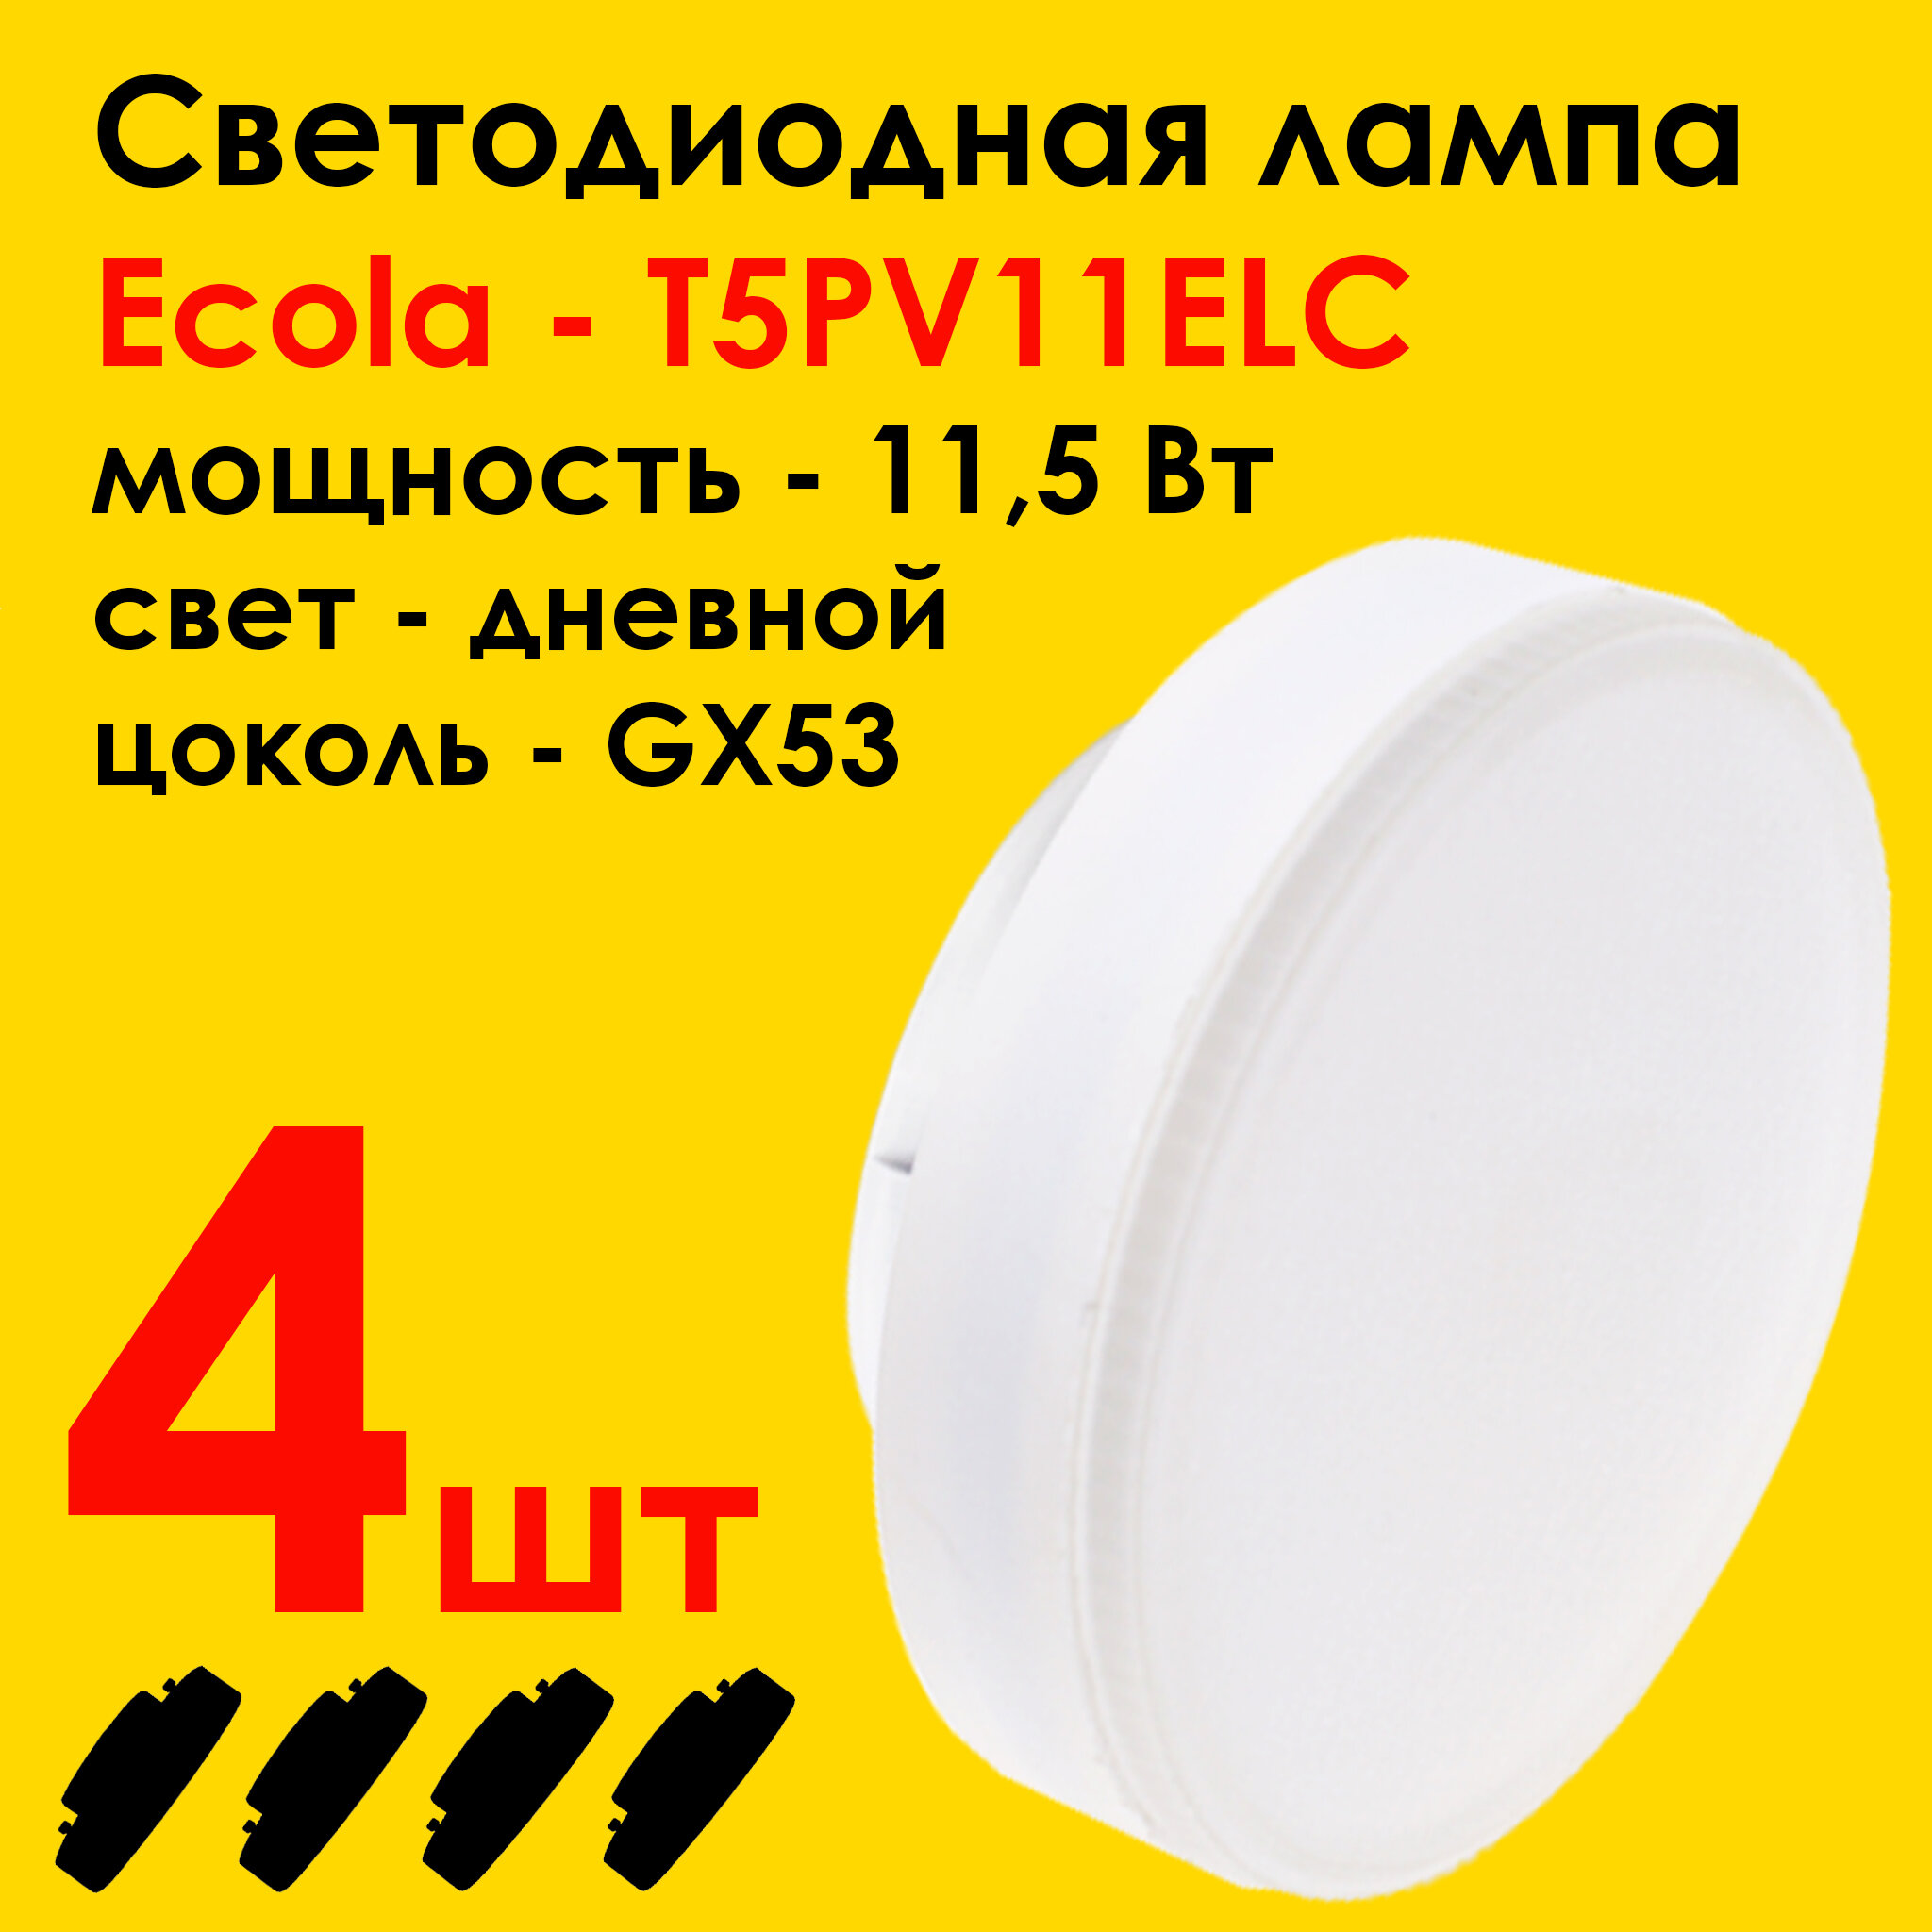 Лампочка светодиодная (4штуки) Ecola Light GX53 LED. Мощность 11,5W 4200K естественный белый свет (дневной)